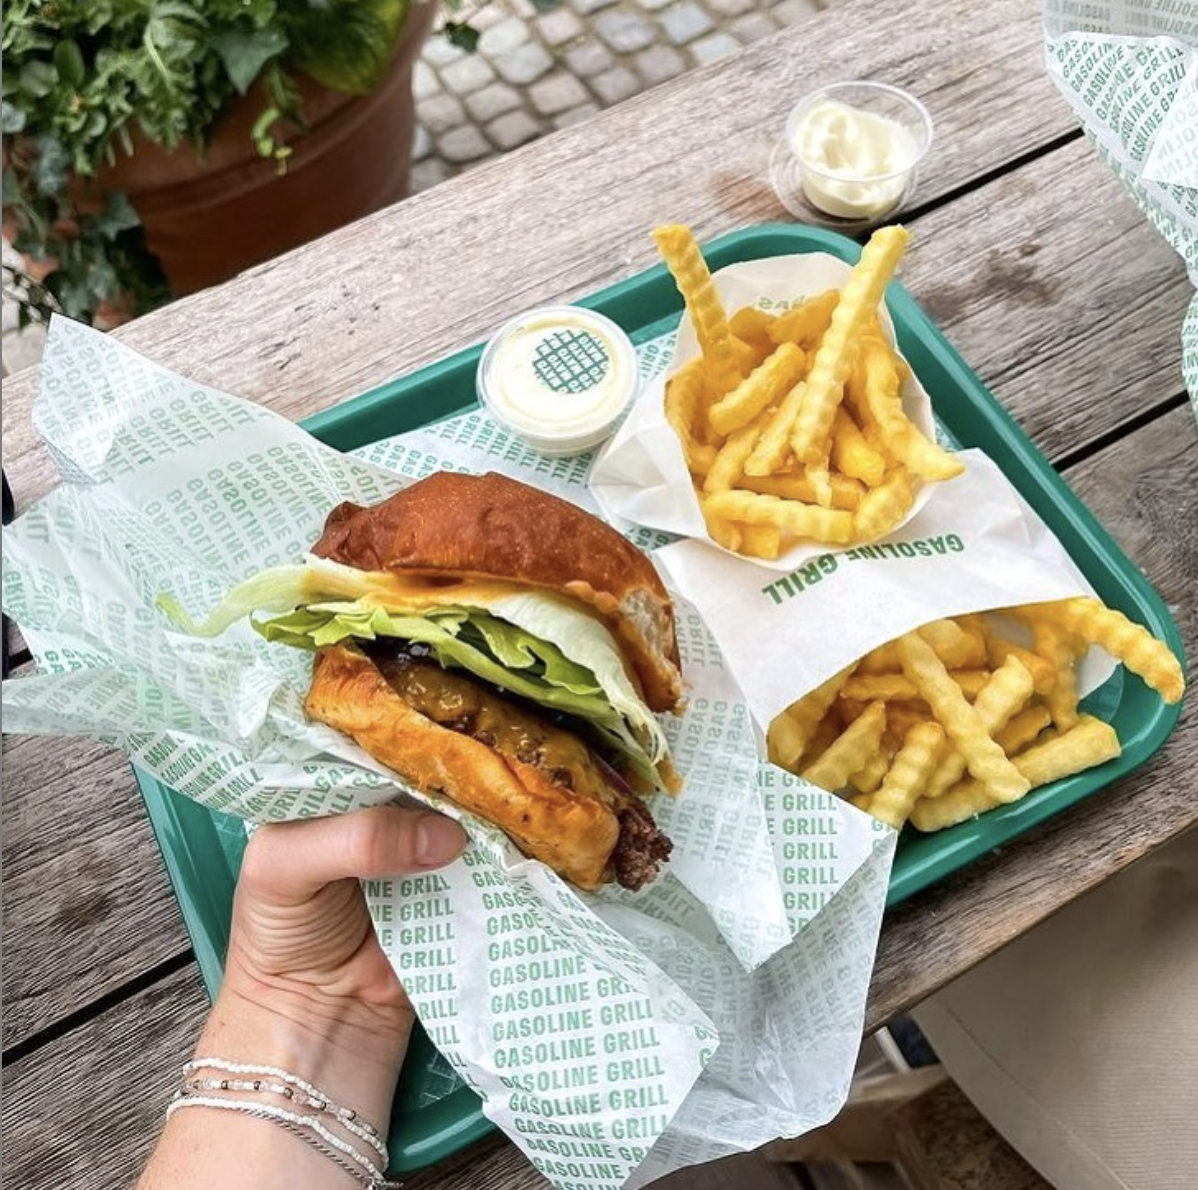 Guide: Den burger i København - København